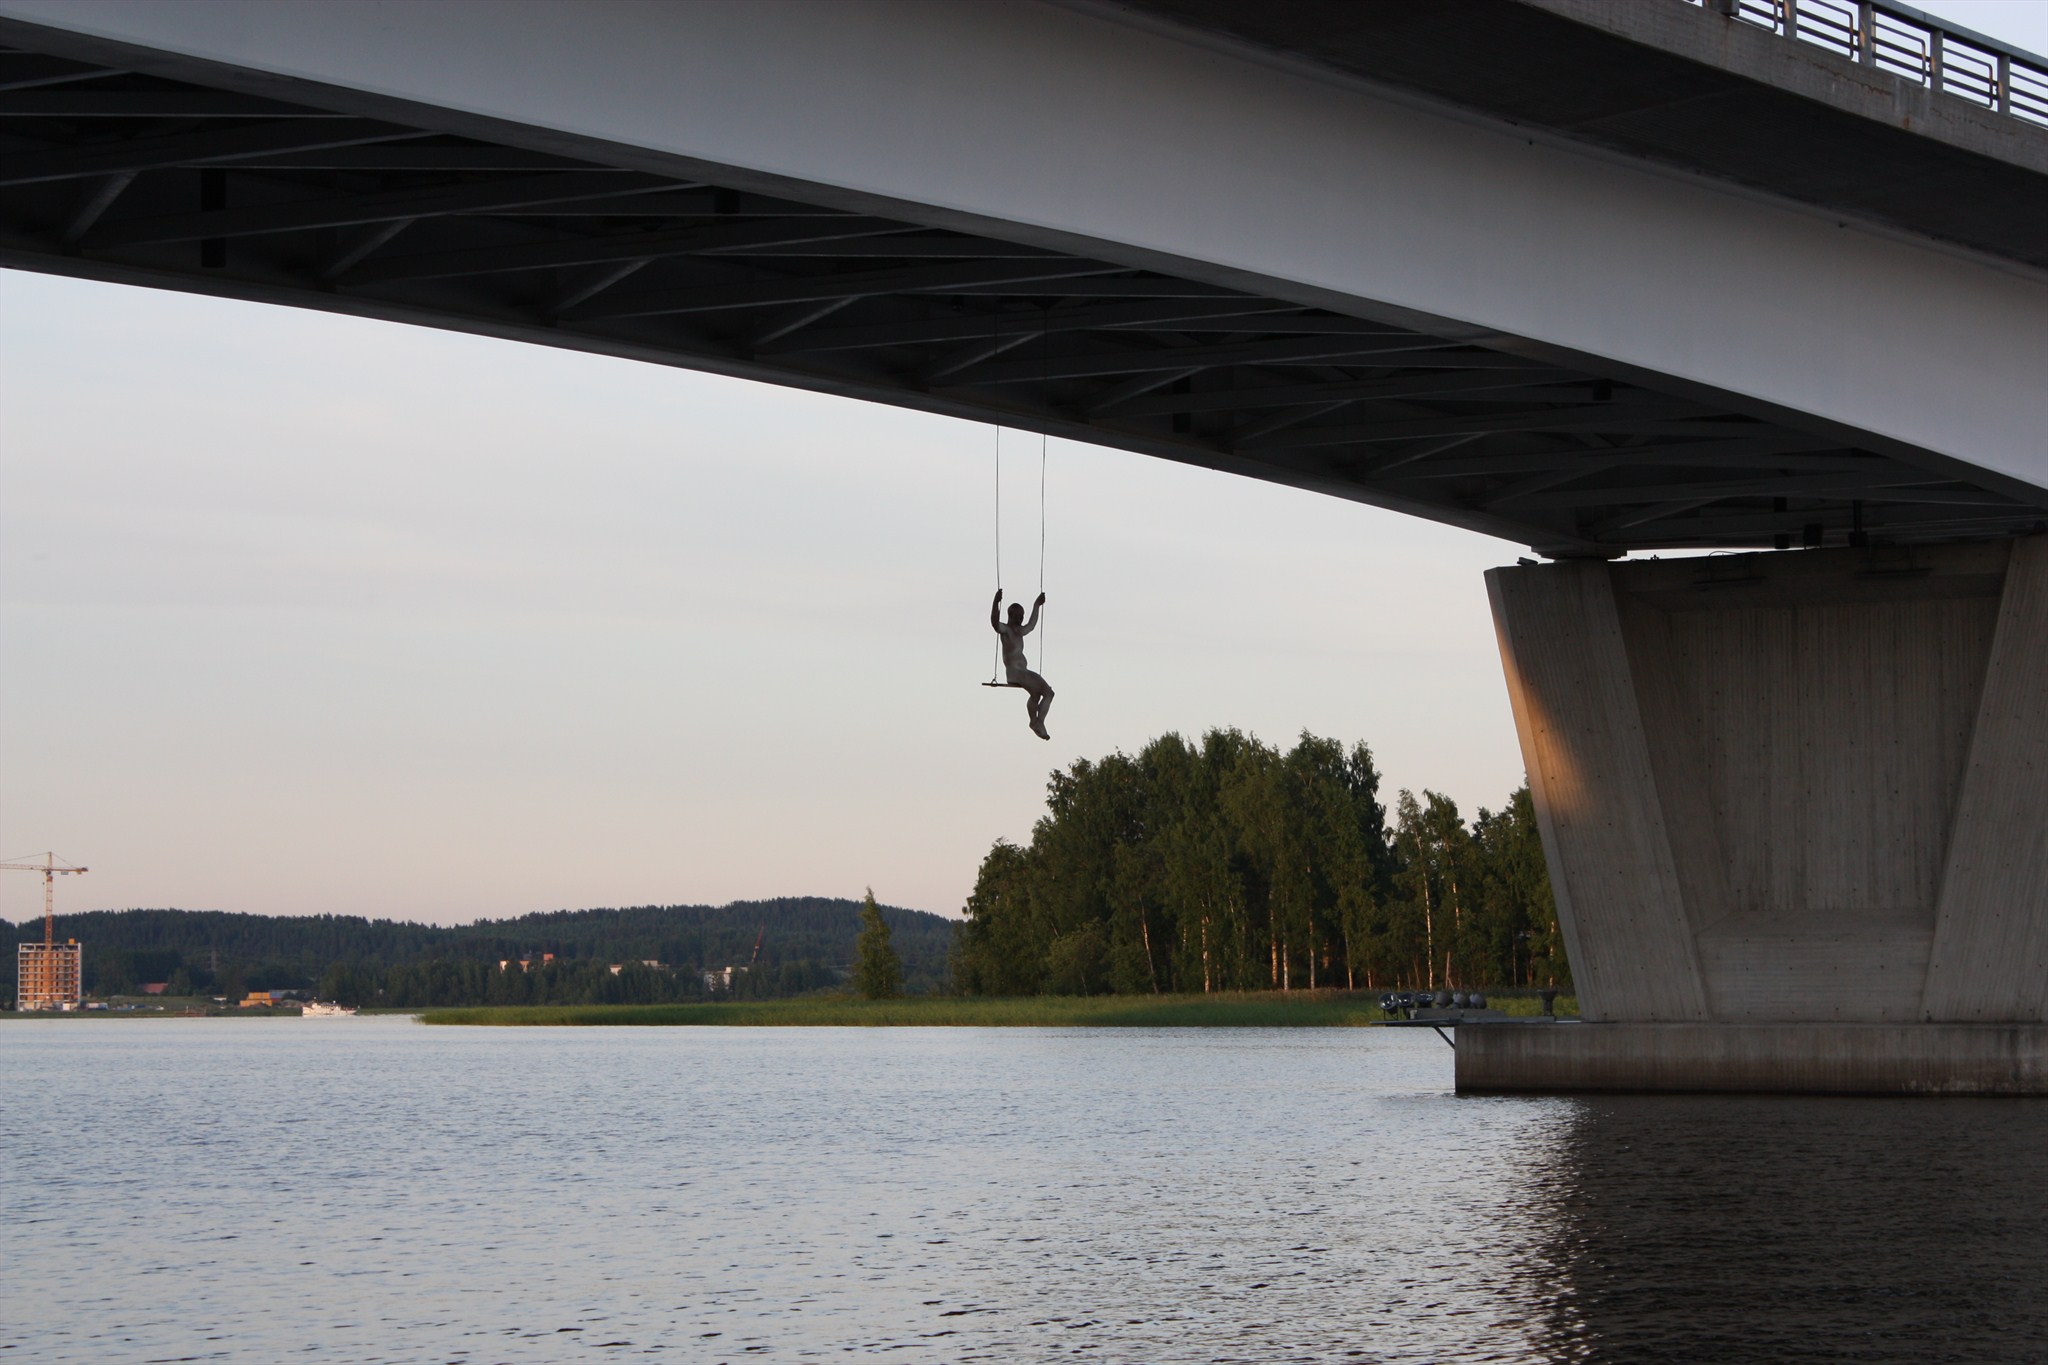 Kuva 1 - Keinuja kätkö esittelee sillalta roikkuvan patsaan. Kätkö on siis patsaan luona.